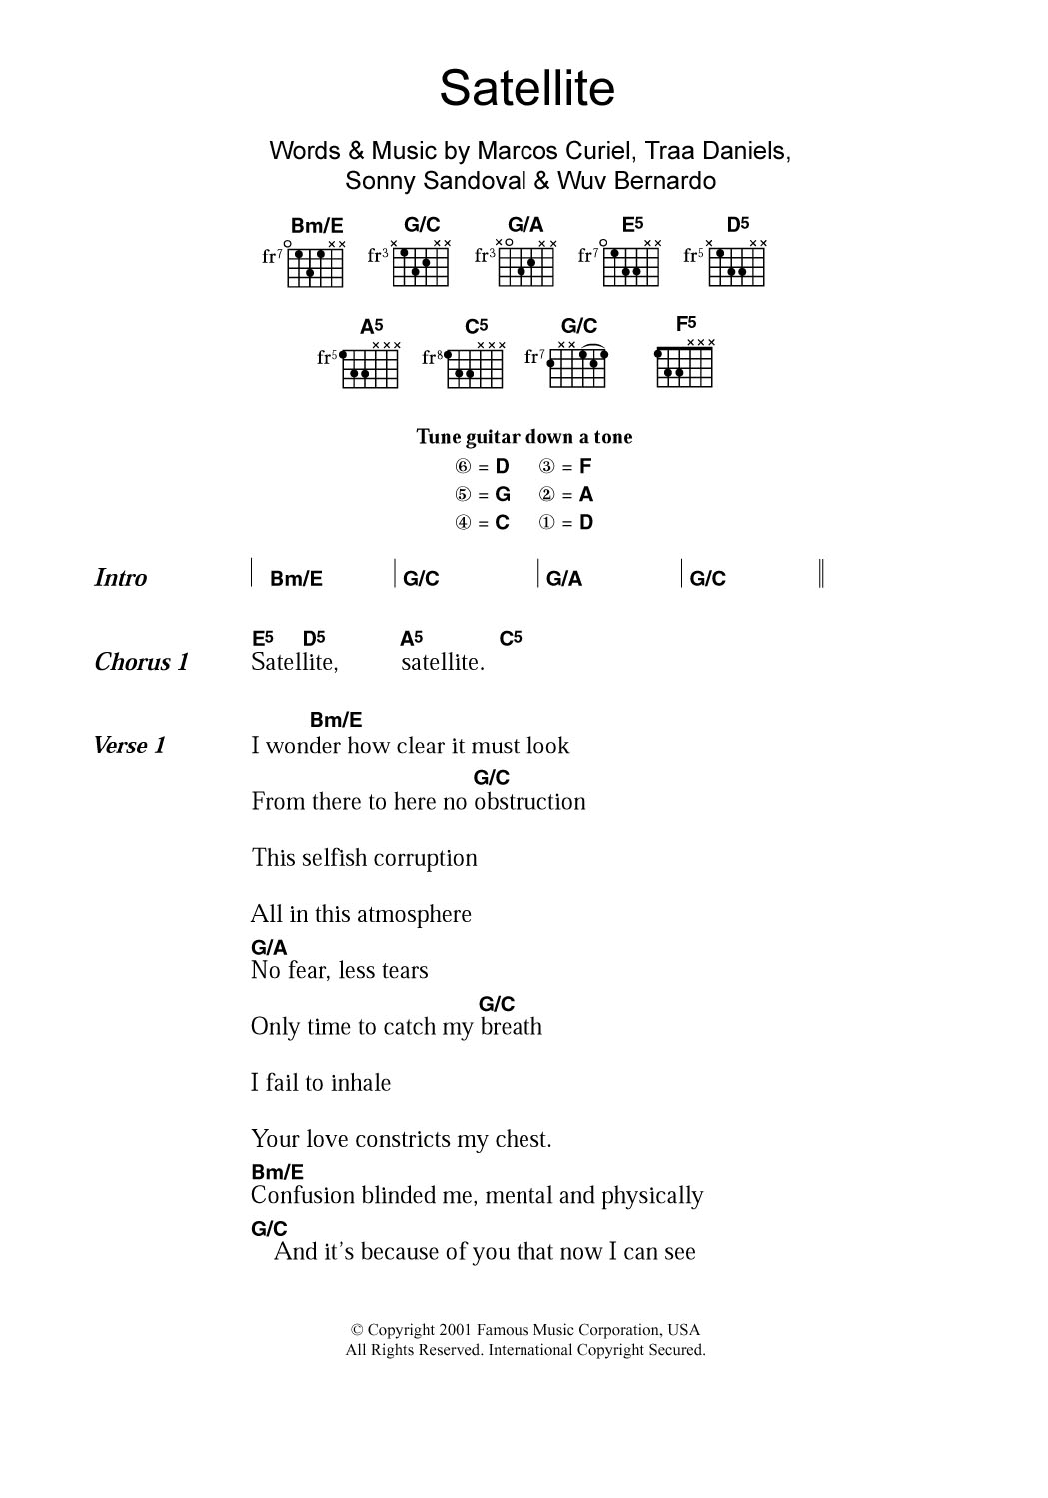 P.O.D. Satellite Sheet Music Notes & Chords for Guitar Chords/Lyrics - Download or Print PDF